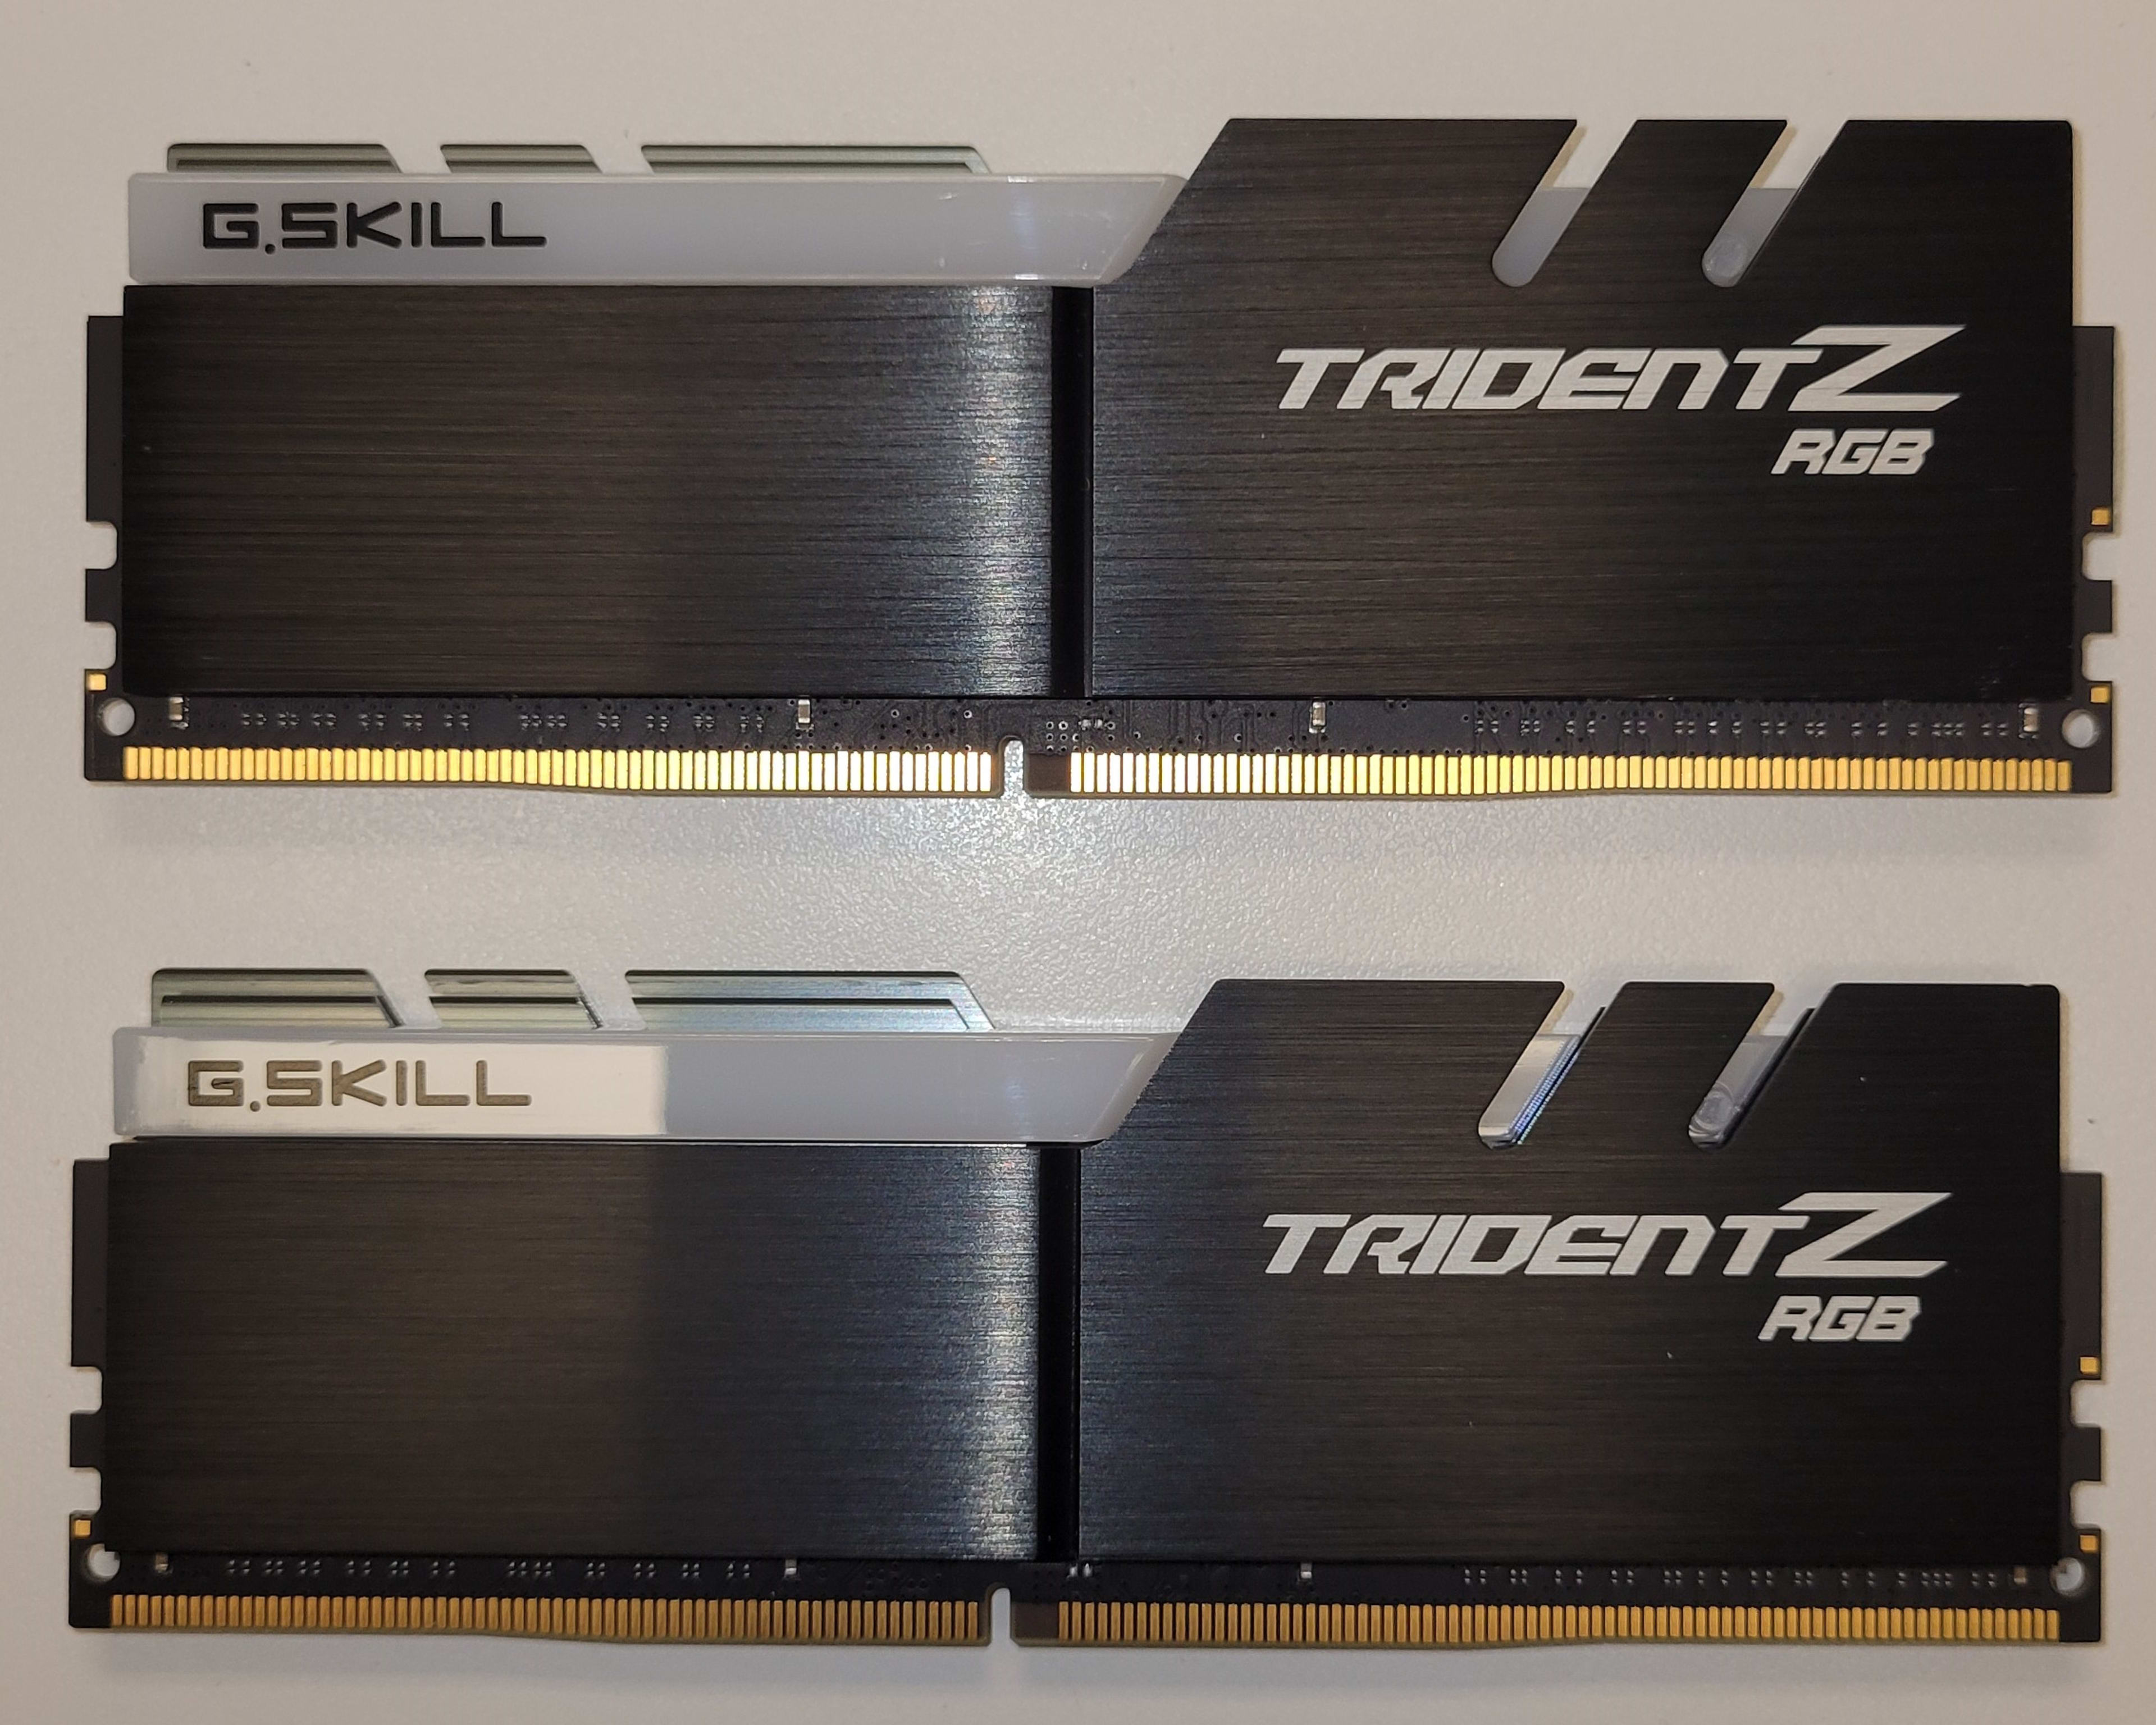 G.SKILL Trident Z RGB 32GB, DDR4 3600, CL16, (2 x 16GB kit)